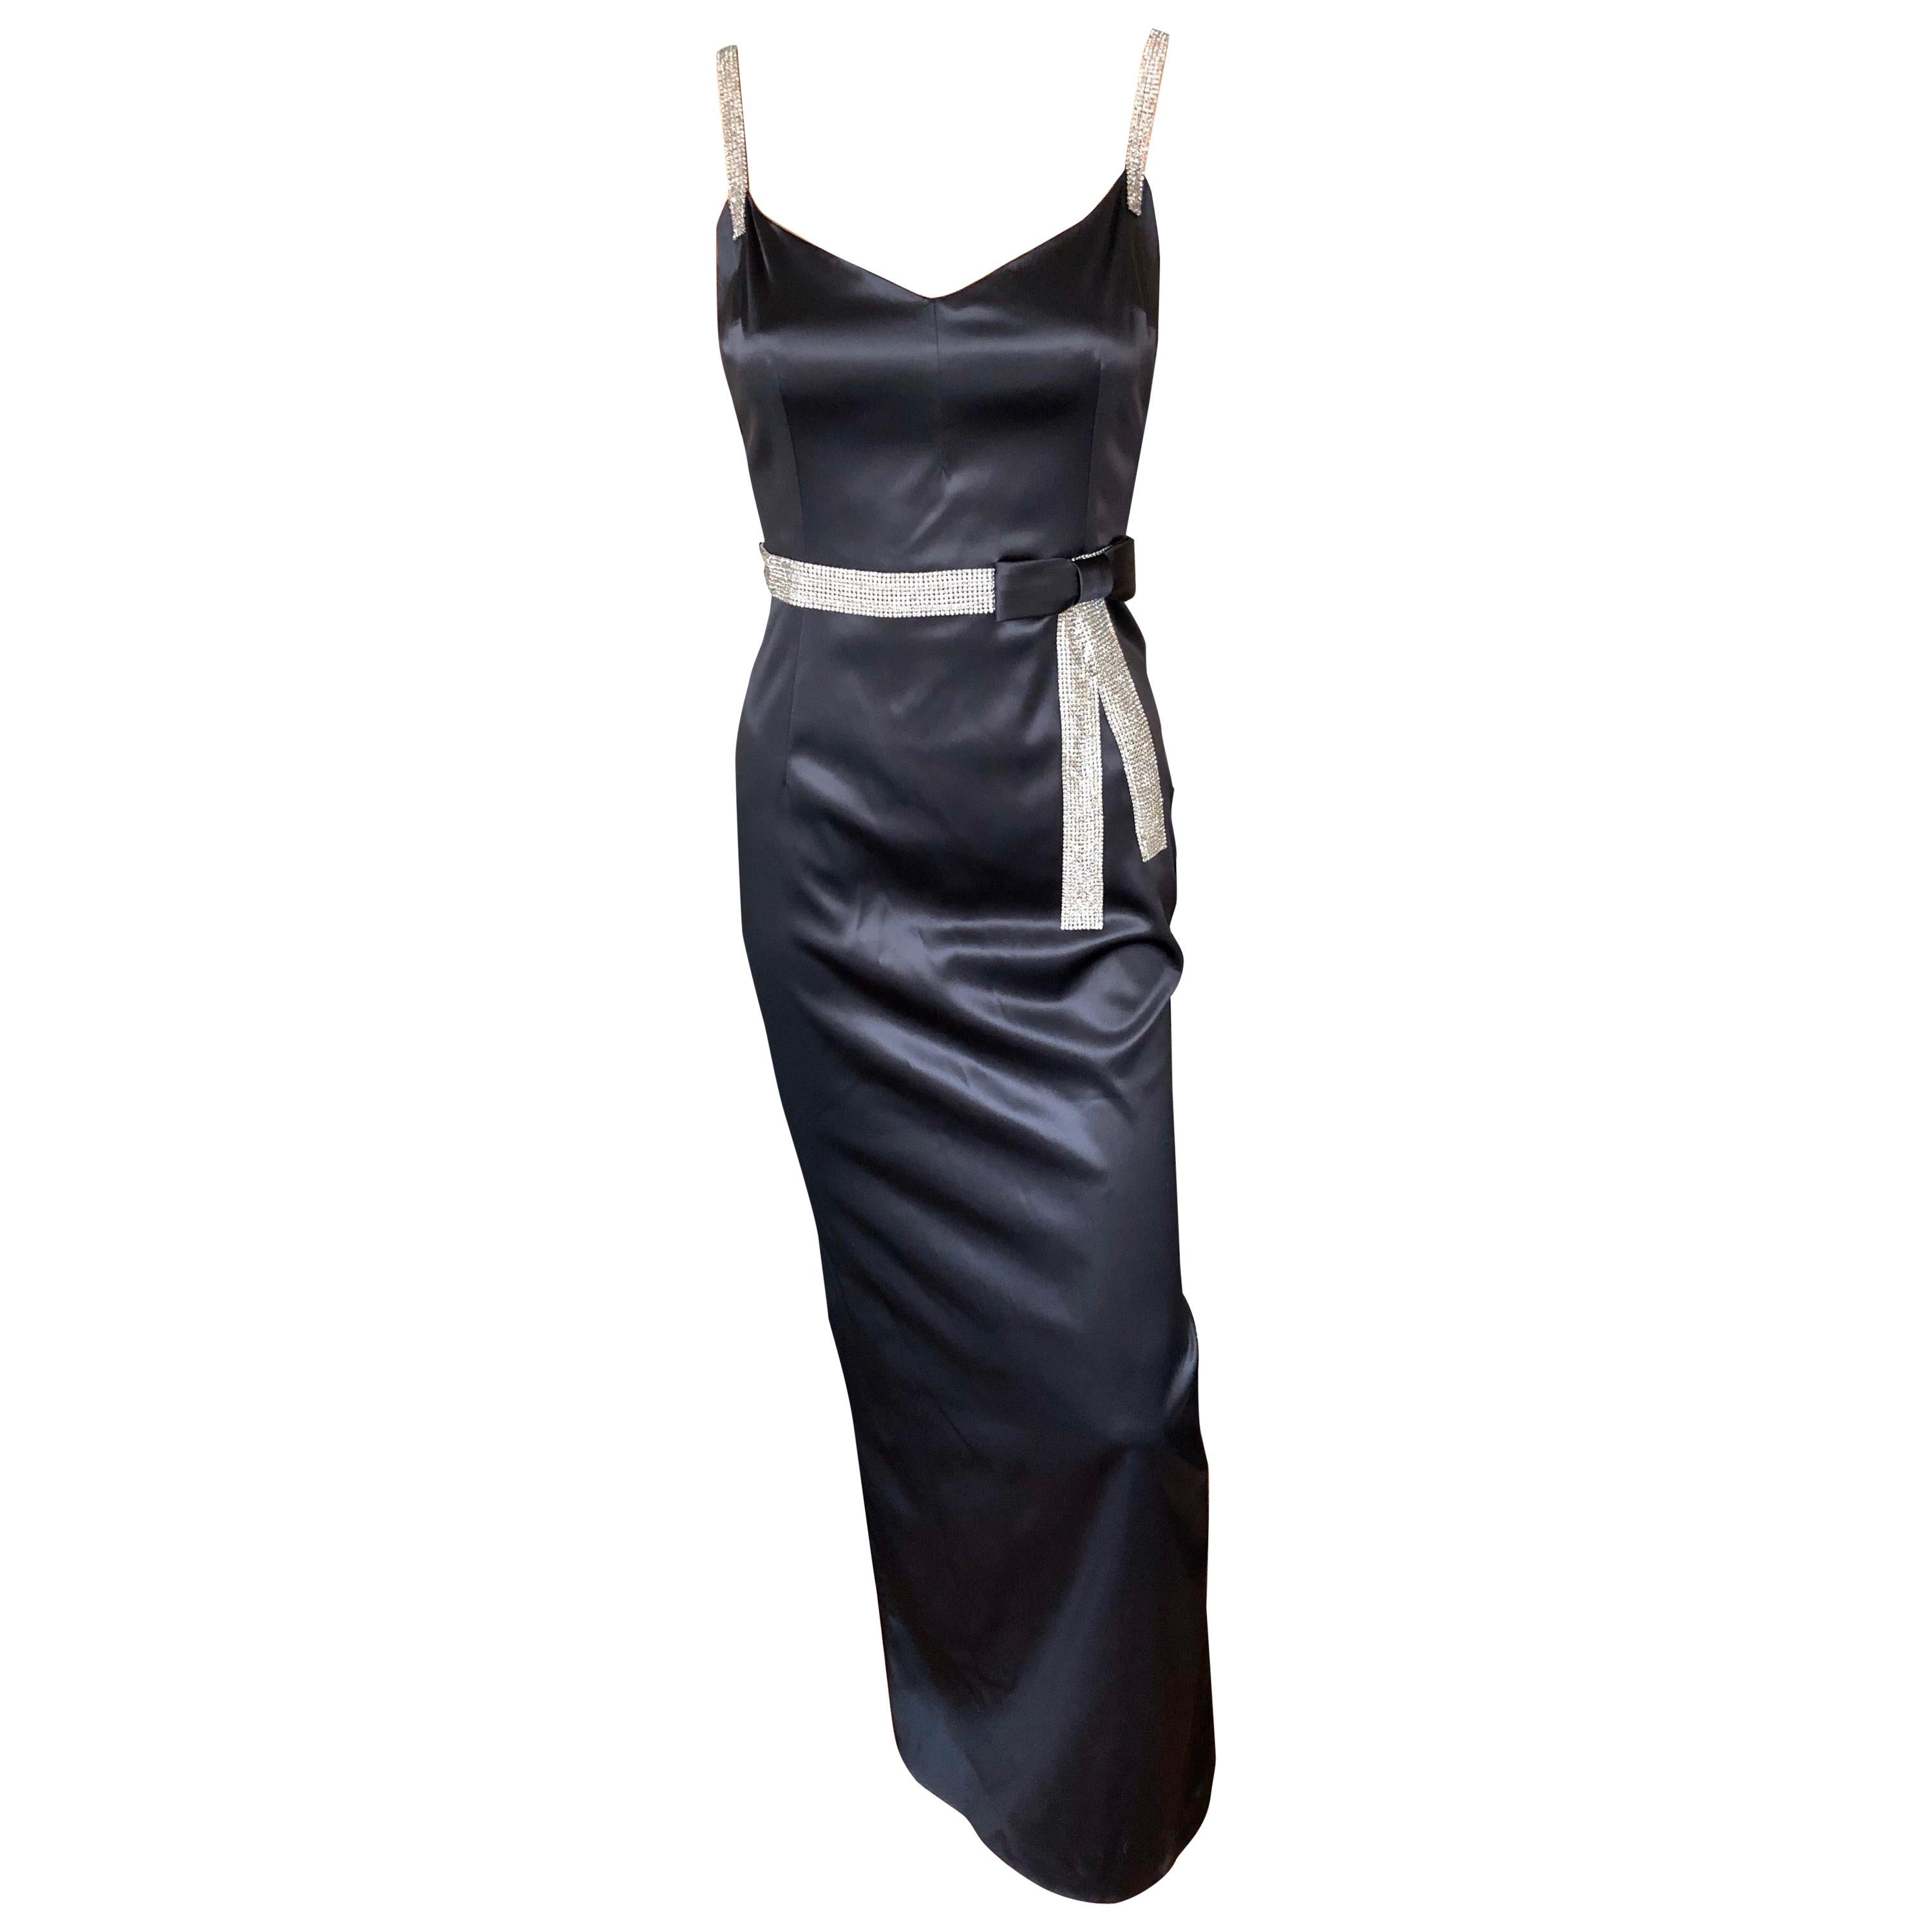 Dolce & Gabbana S/S 2004 Embellished Crystal Belt Satin Black Evening Dress Gown